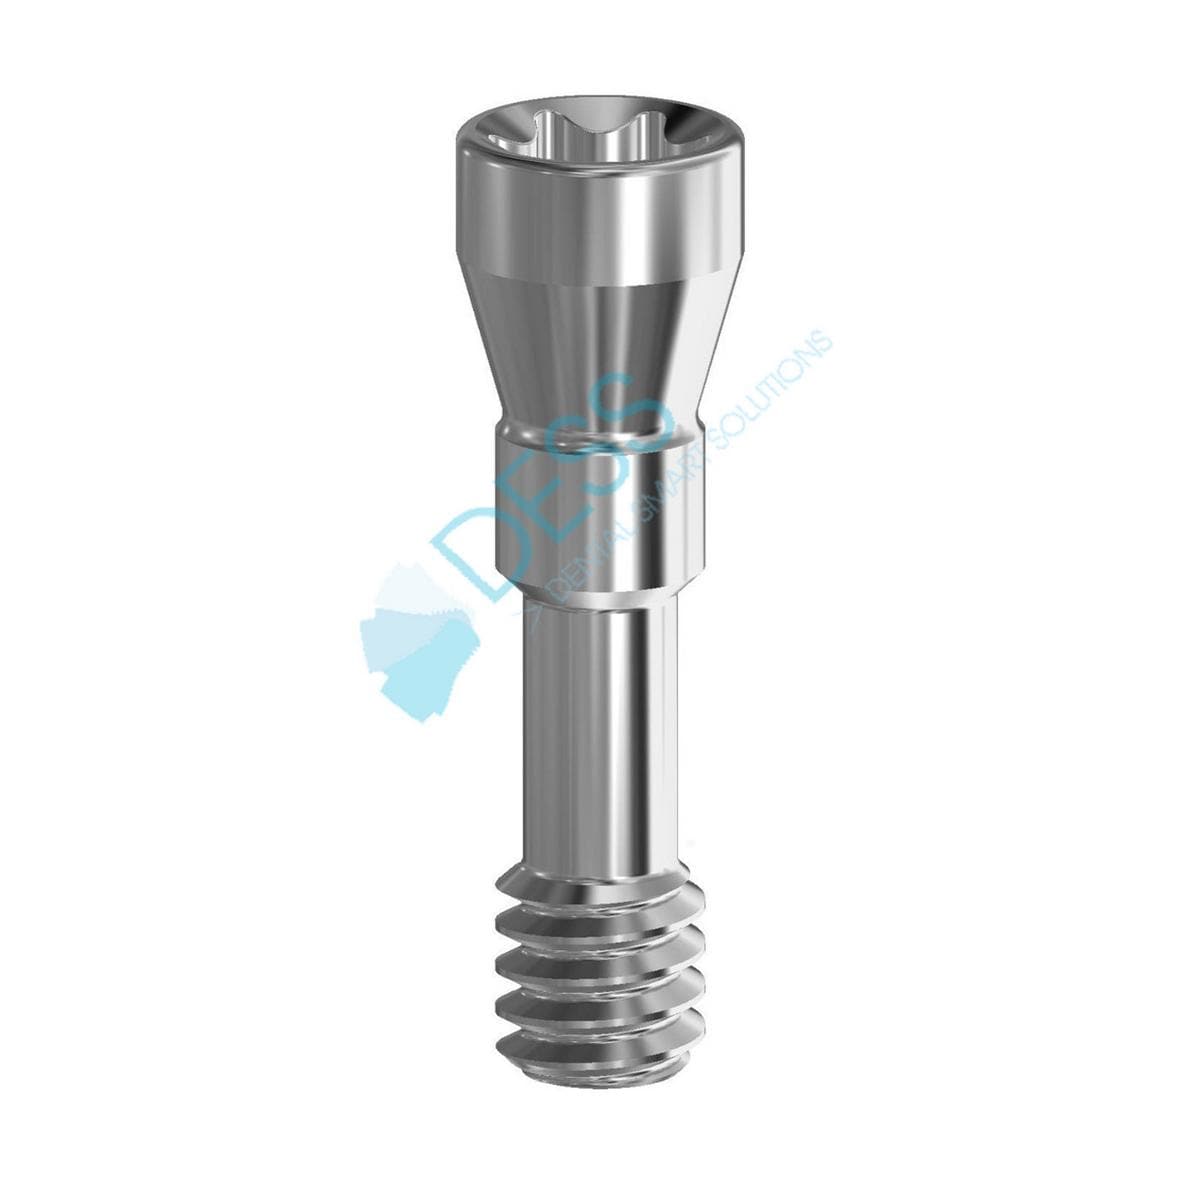 Abutmentschraube Torx® auf Implantat - kompatibel mit Straumann® Bone Level® - RC Ø 4,1 mm, Packung 10 Stück